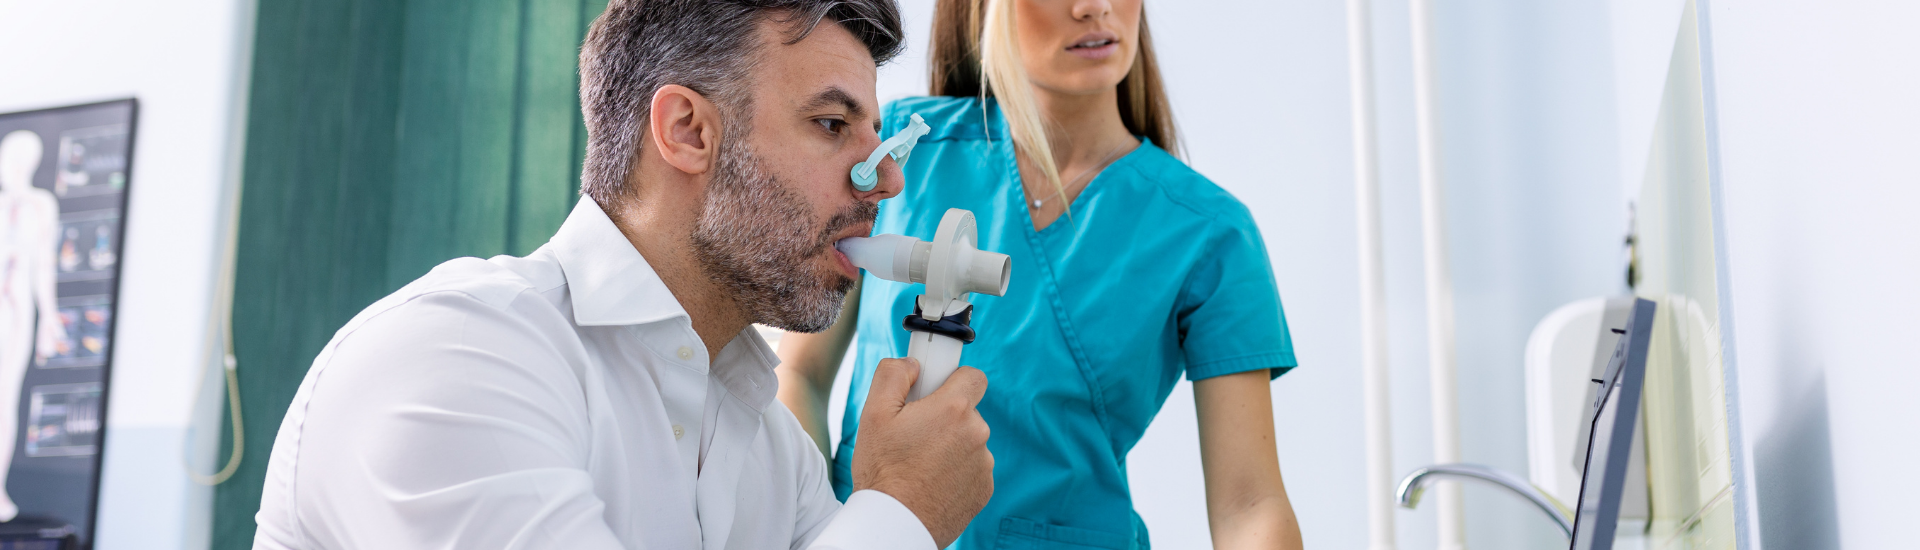 Esame Breath Test Medical Group - Formato Desktop